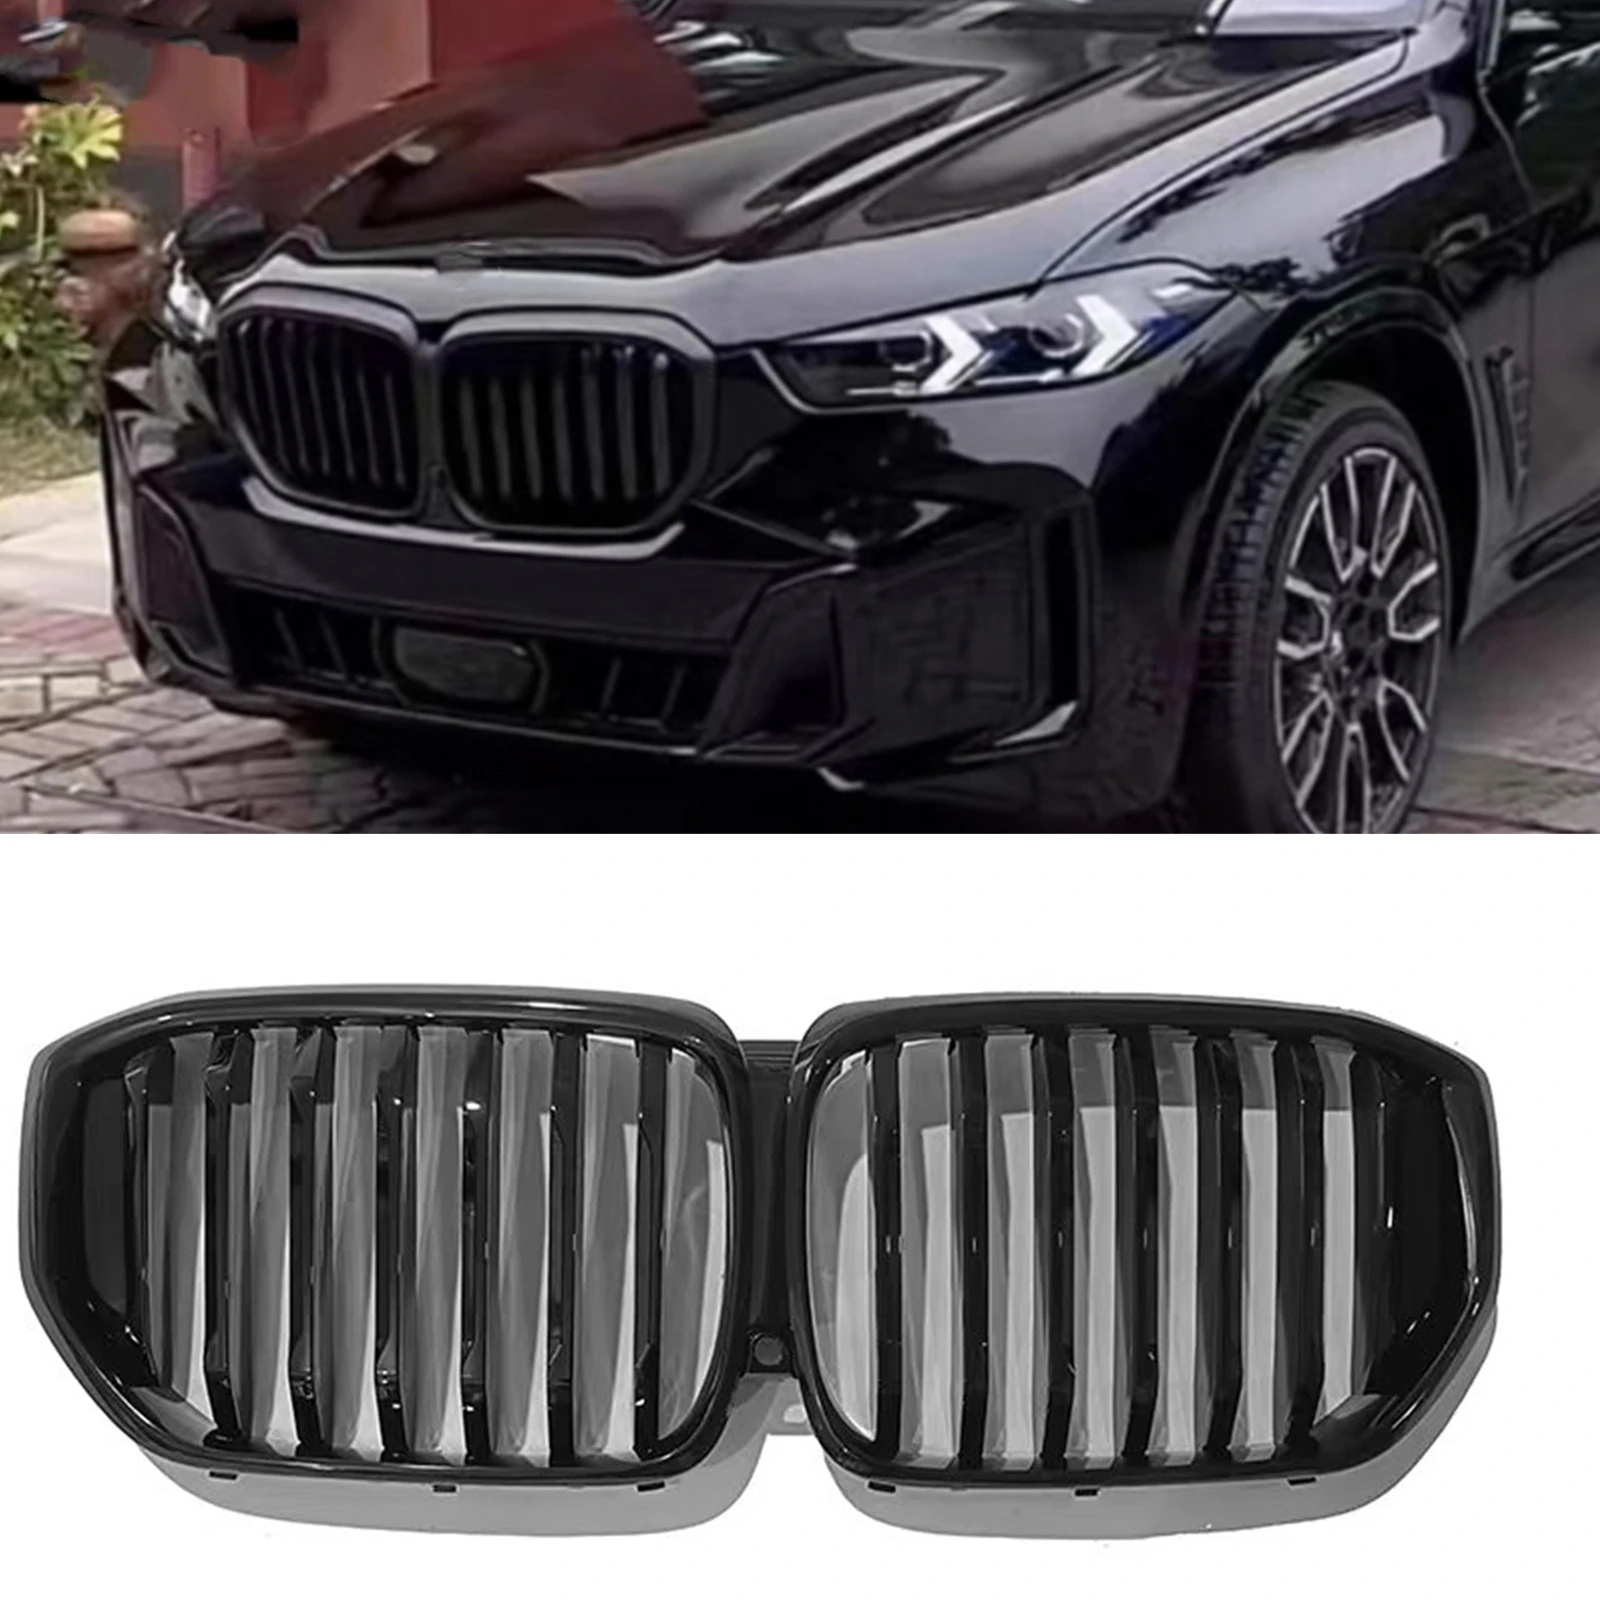 

Передняя решетка гоночного гриля для BMW G05 LCI X5 2023-2024, одиночная черная решетка для верхнего бампера автомобиля с отверстием для камеры